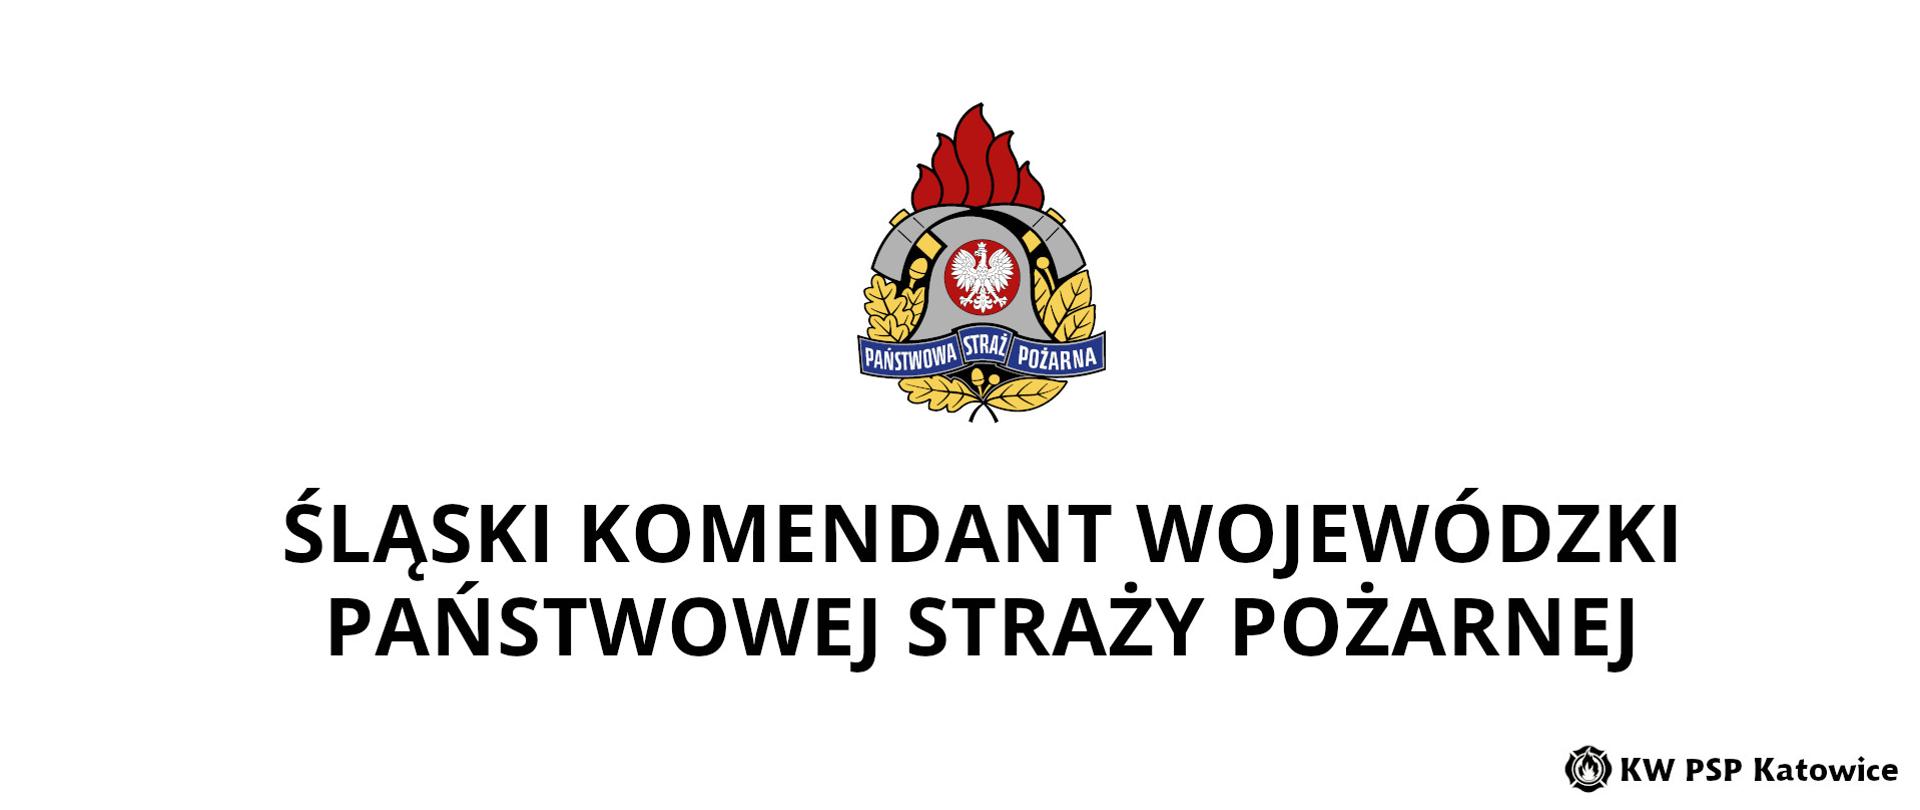 Ilustracja przedstawia logo Państwowej Straży Pożarnej oraz napis o treści Śląski Komendant Wojewódzki Państwowej Straży Pożarnej